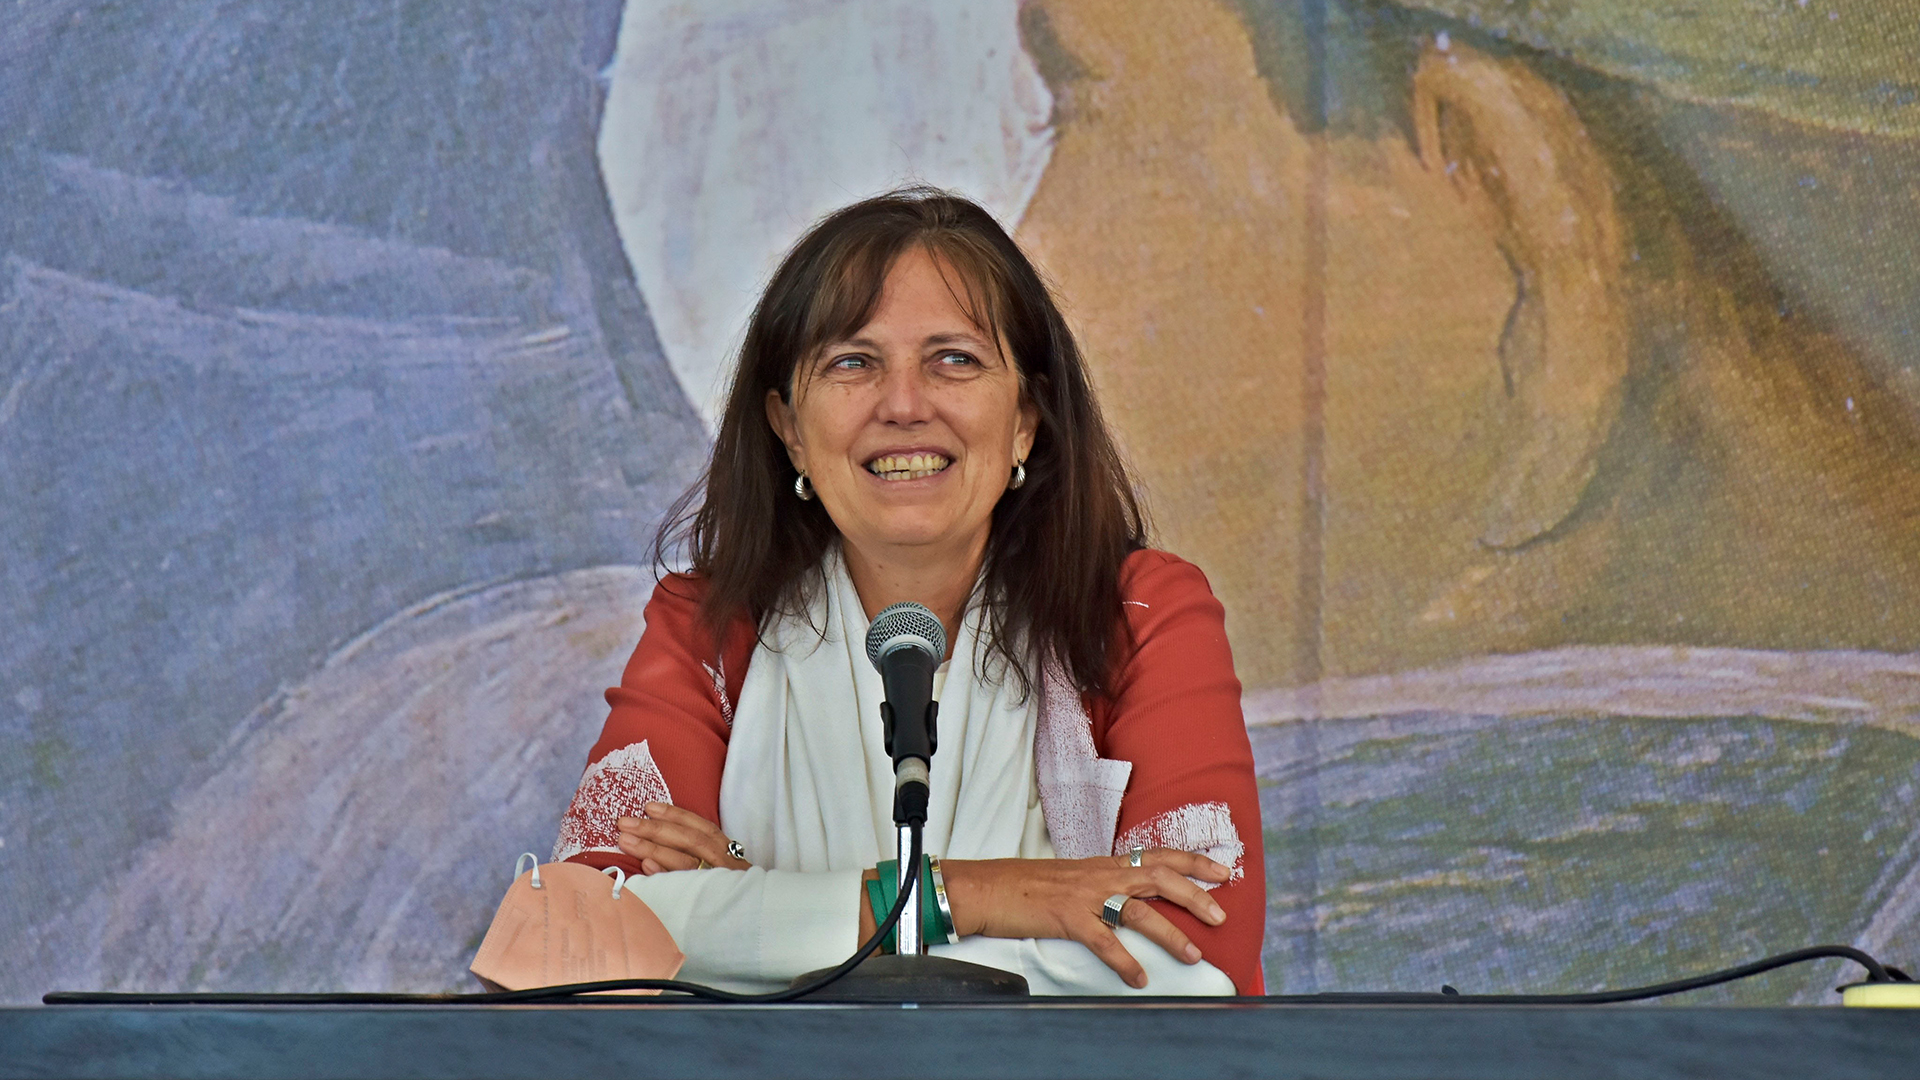 Claudia Piñeiro, tras ganar el Premio Hammett:  “Este galardón es el corolario de la lucha de tantas mujeres”